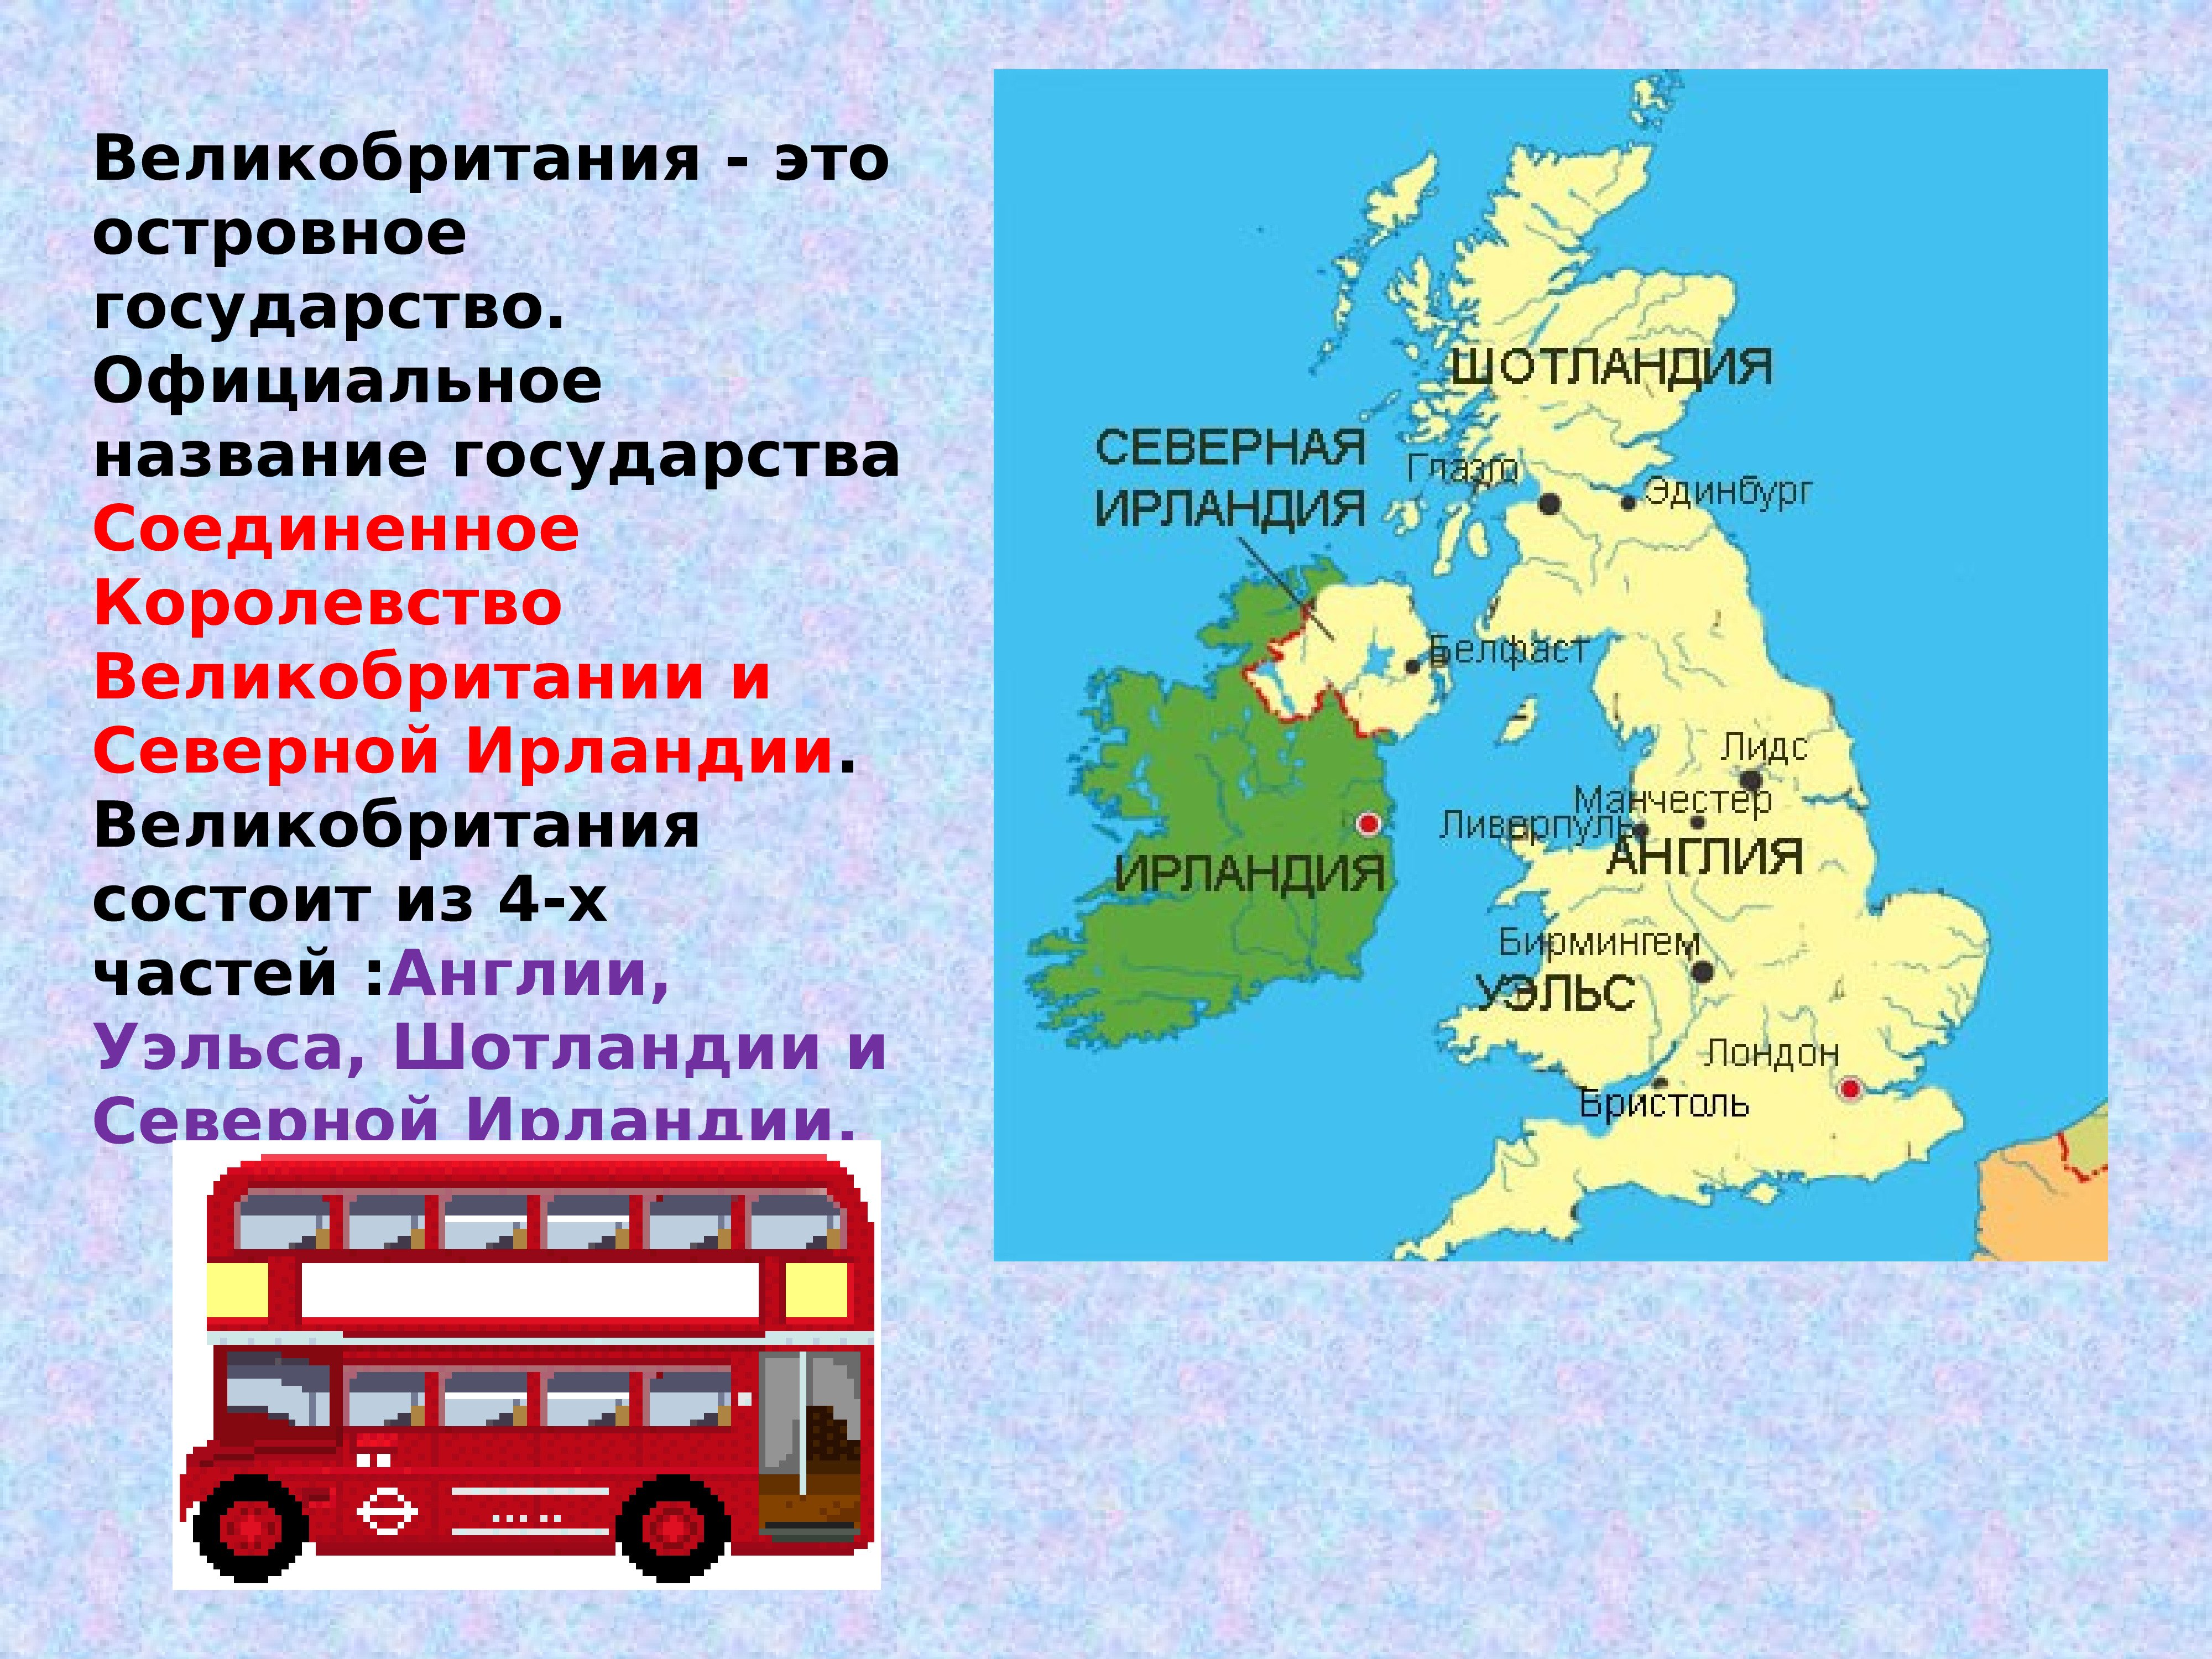 Какая страна не является королевством. Соединенное королевство Великобритании и Северной Ирландии карта. Из каких частей состоит Соединенное королевство Великобритании. Части Соединенного королевства Великобритании и их столицы. Столицы Соединенного королевства Великобритании и Северной Ирландии.